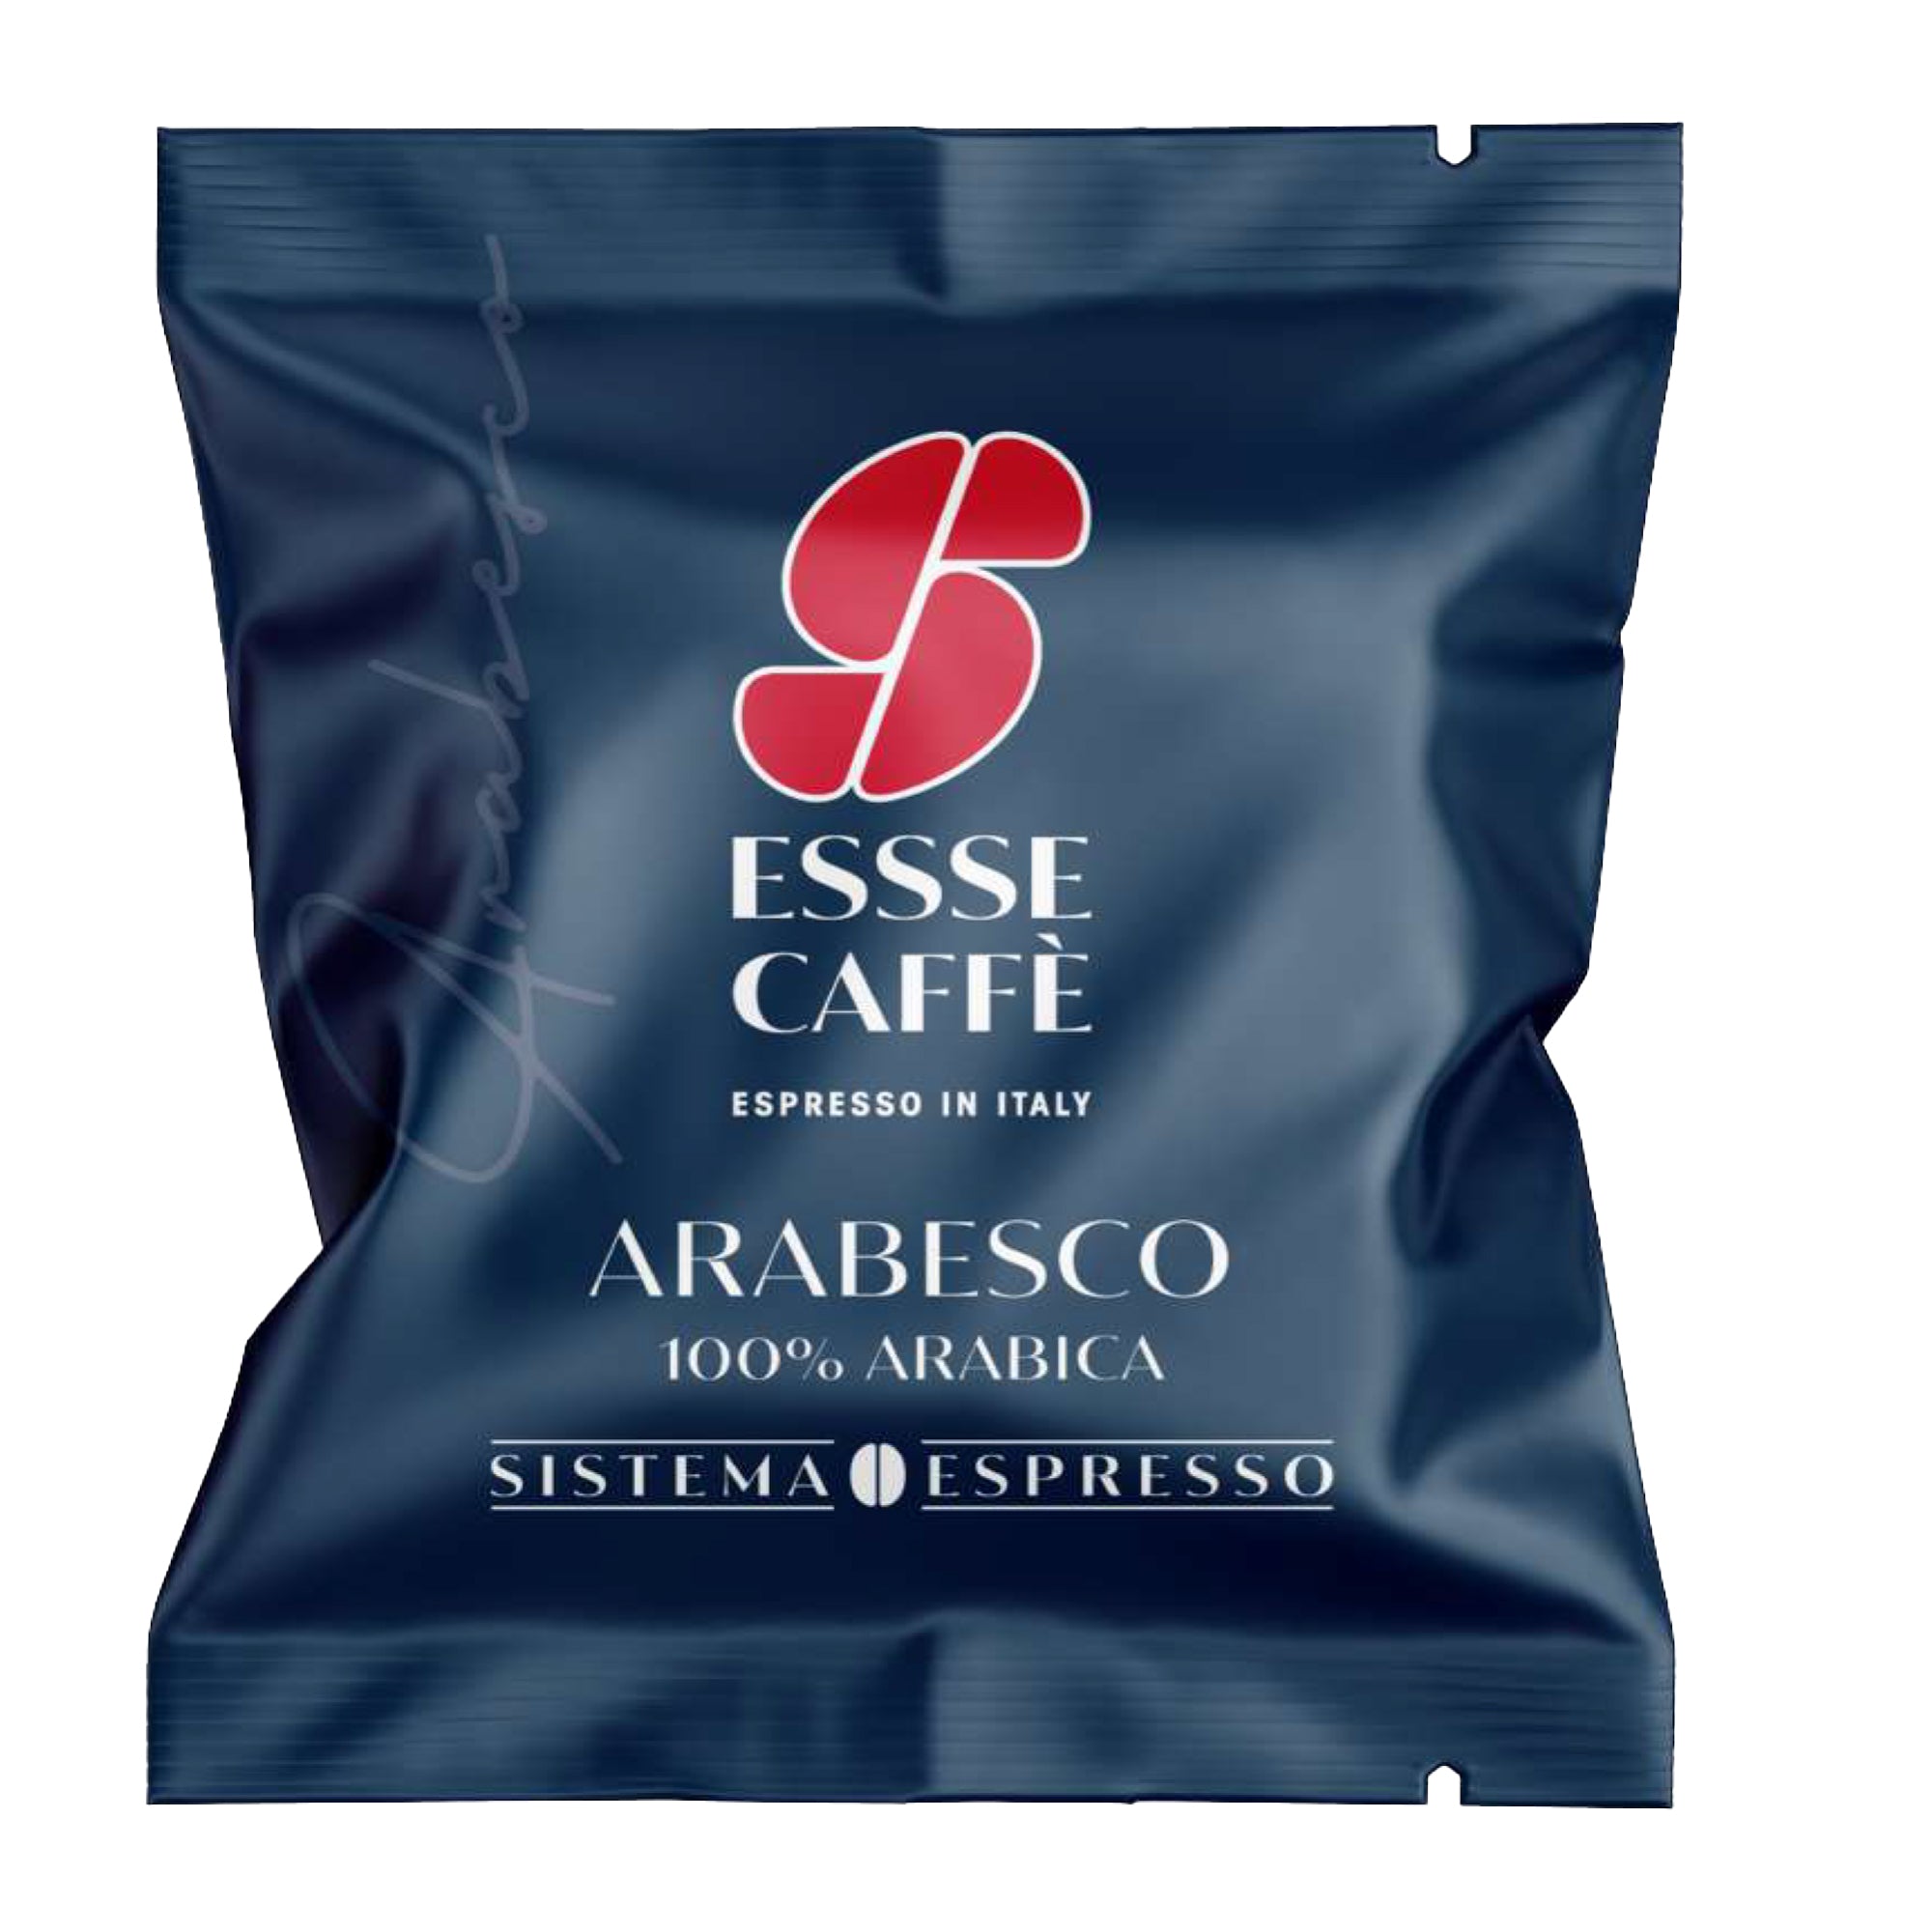 essse-caffe-capsula-caffe-arabesco-essse-caffe